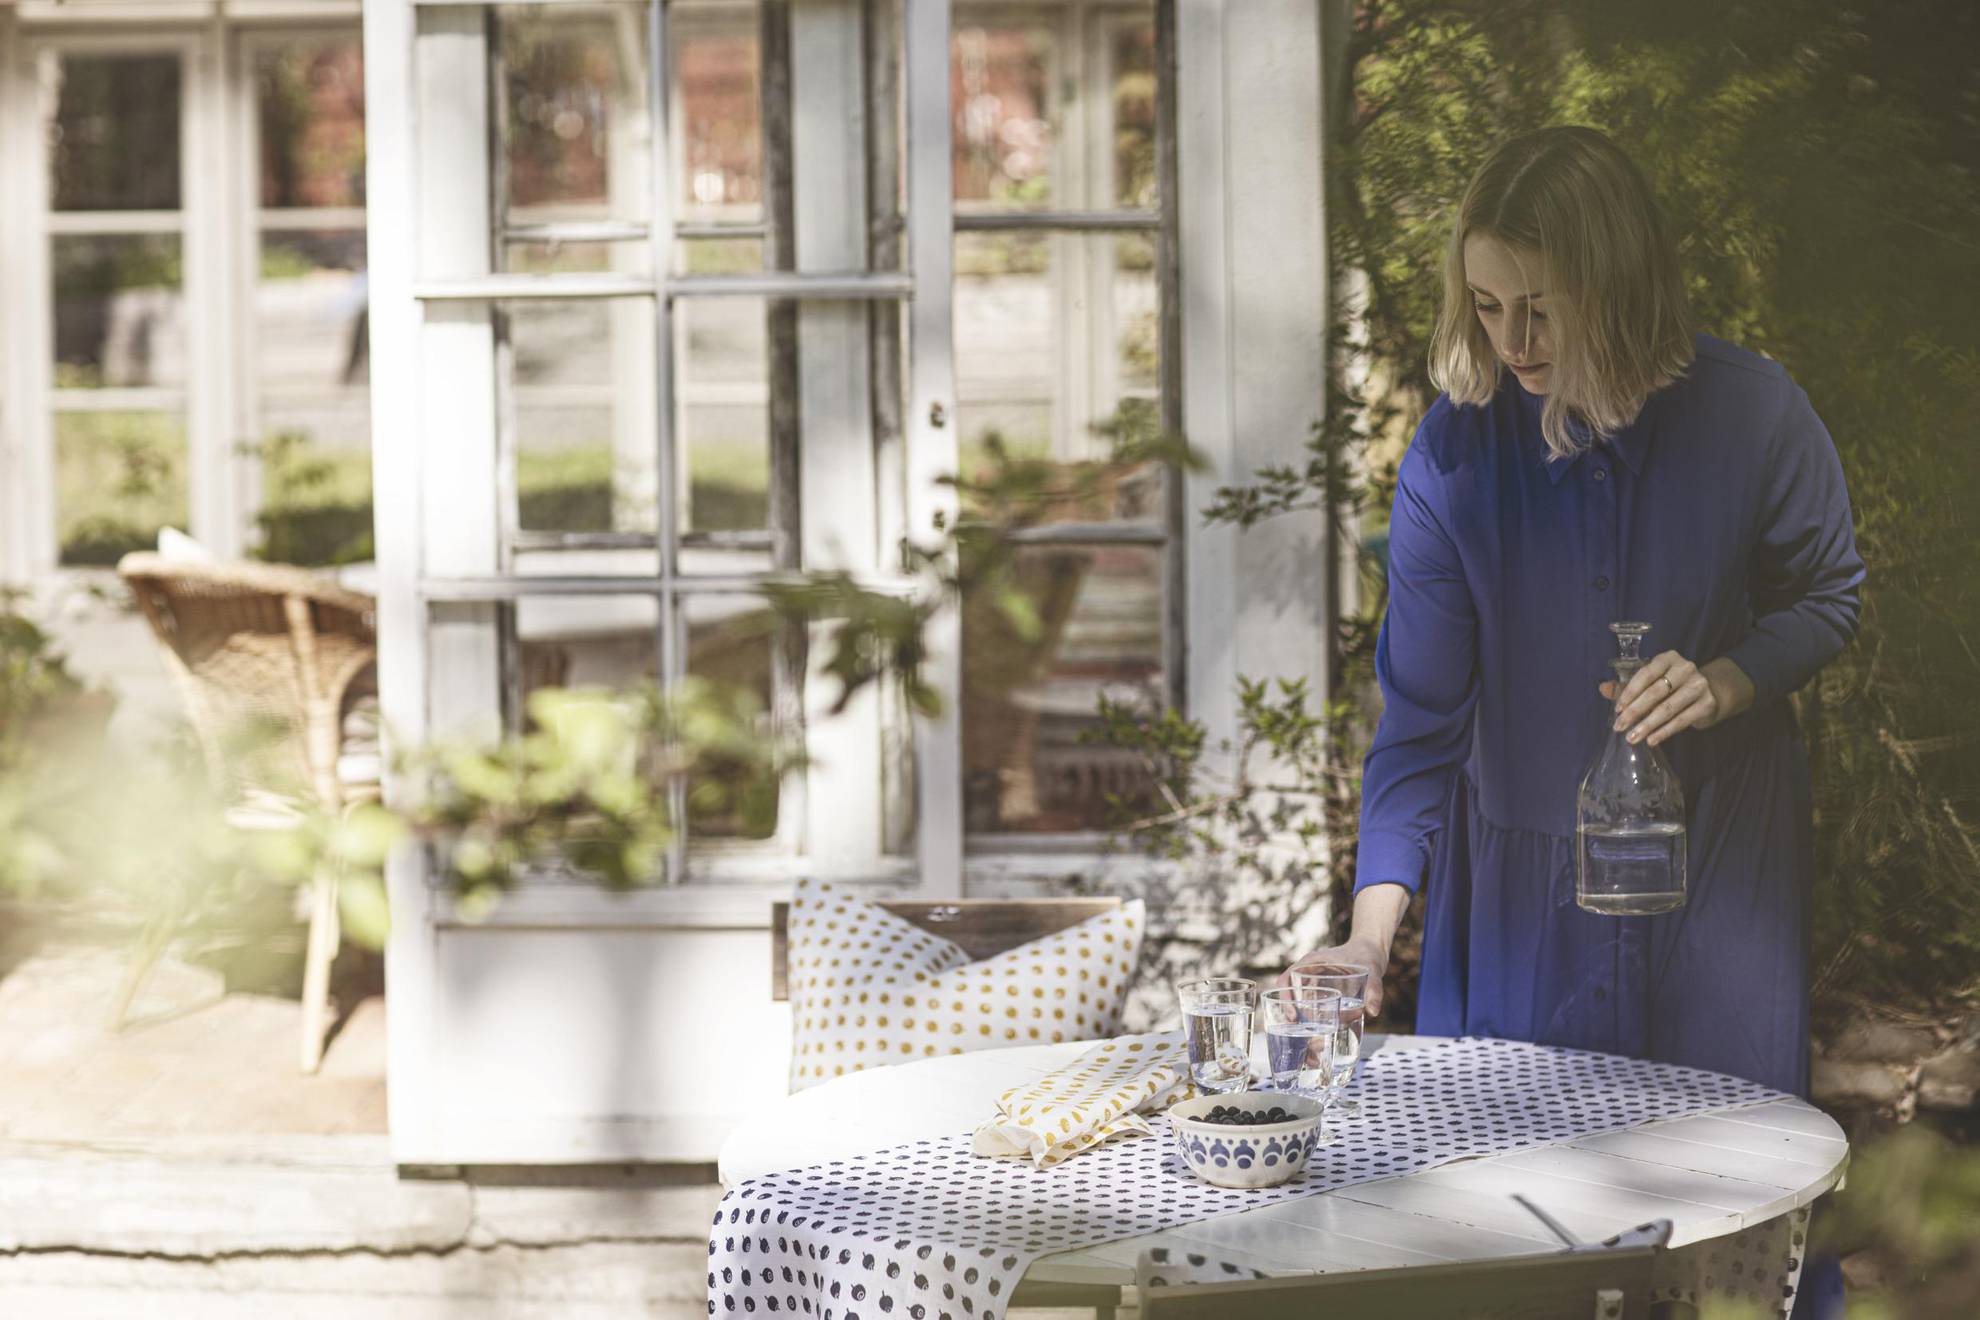 Eine Frau stellt ein Glas Wasser auf einen Tisch, der mit einer Tischdecke und einer Schüssel Blaubeeren gedeckt ist. Im Hintergrund sieht man die Türen zu einem Haus und vorne ist ein Ast verschwommen.